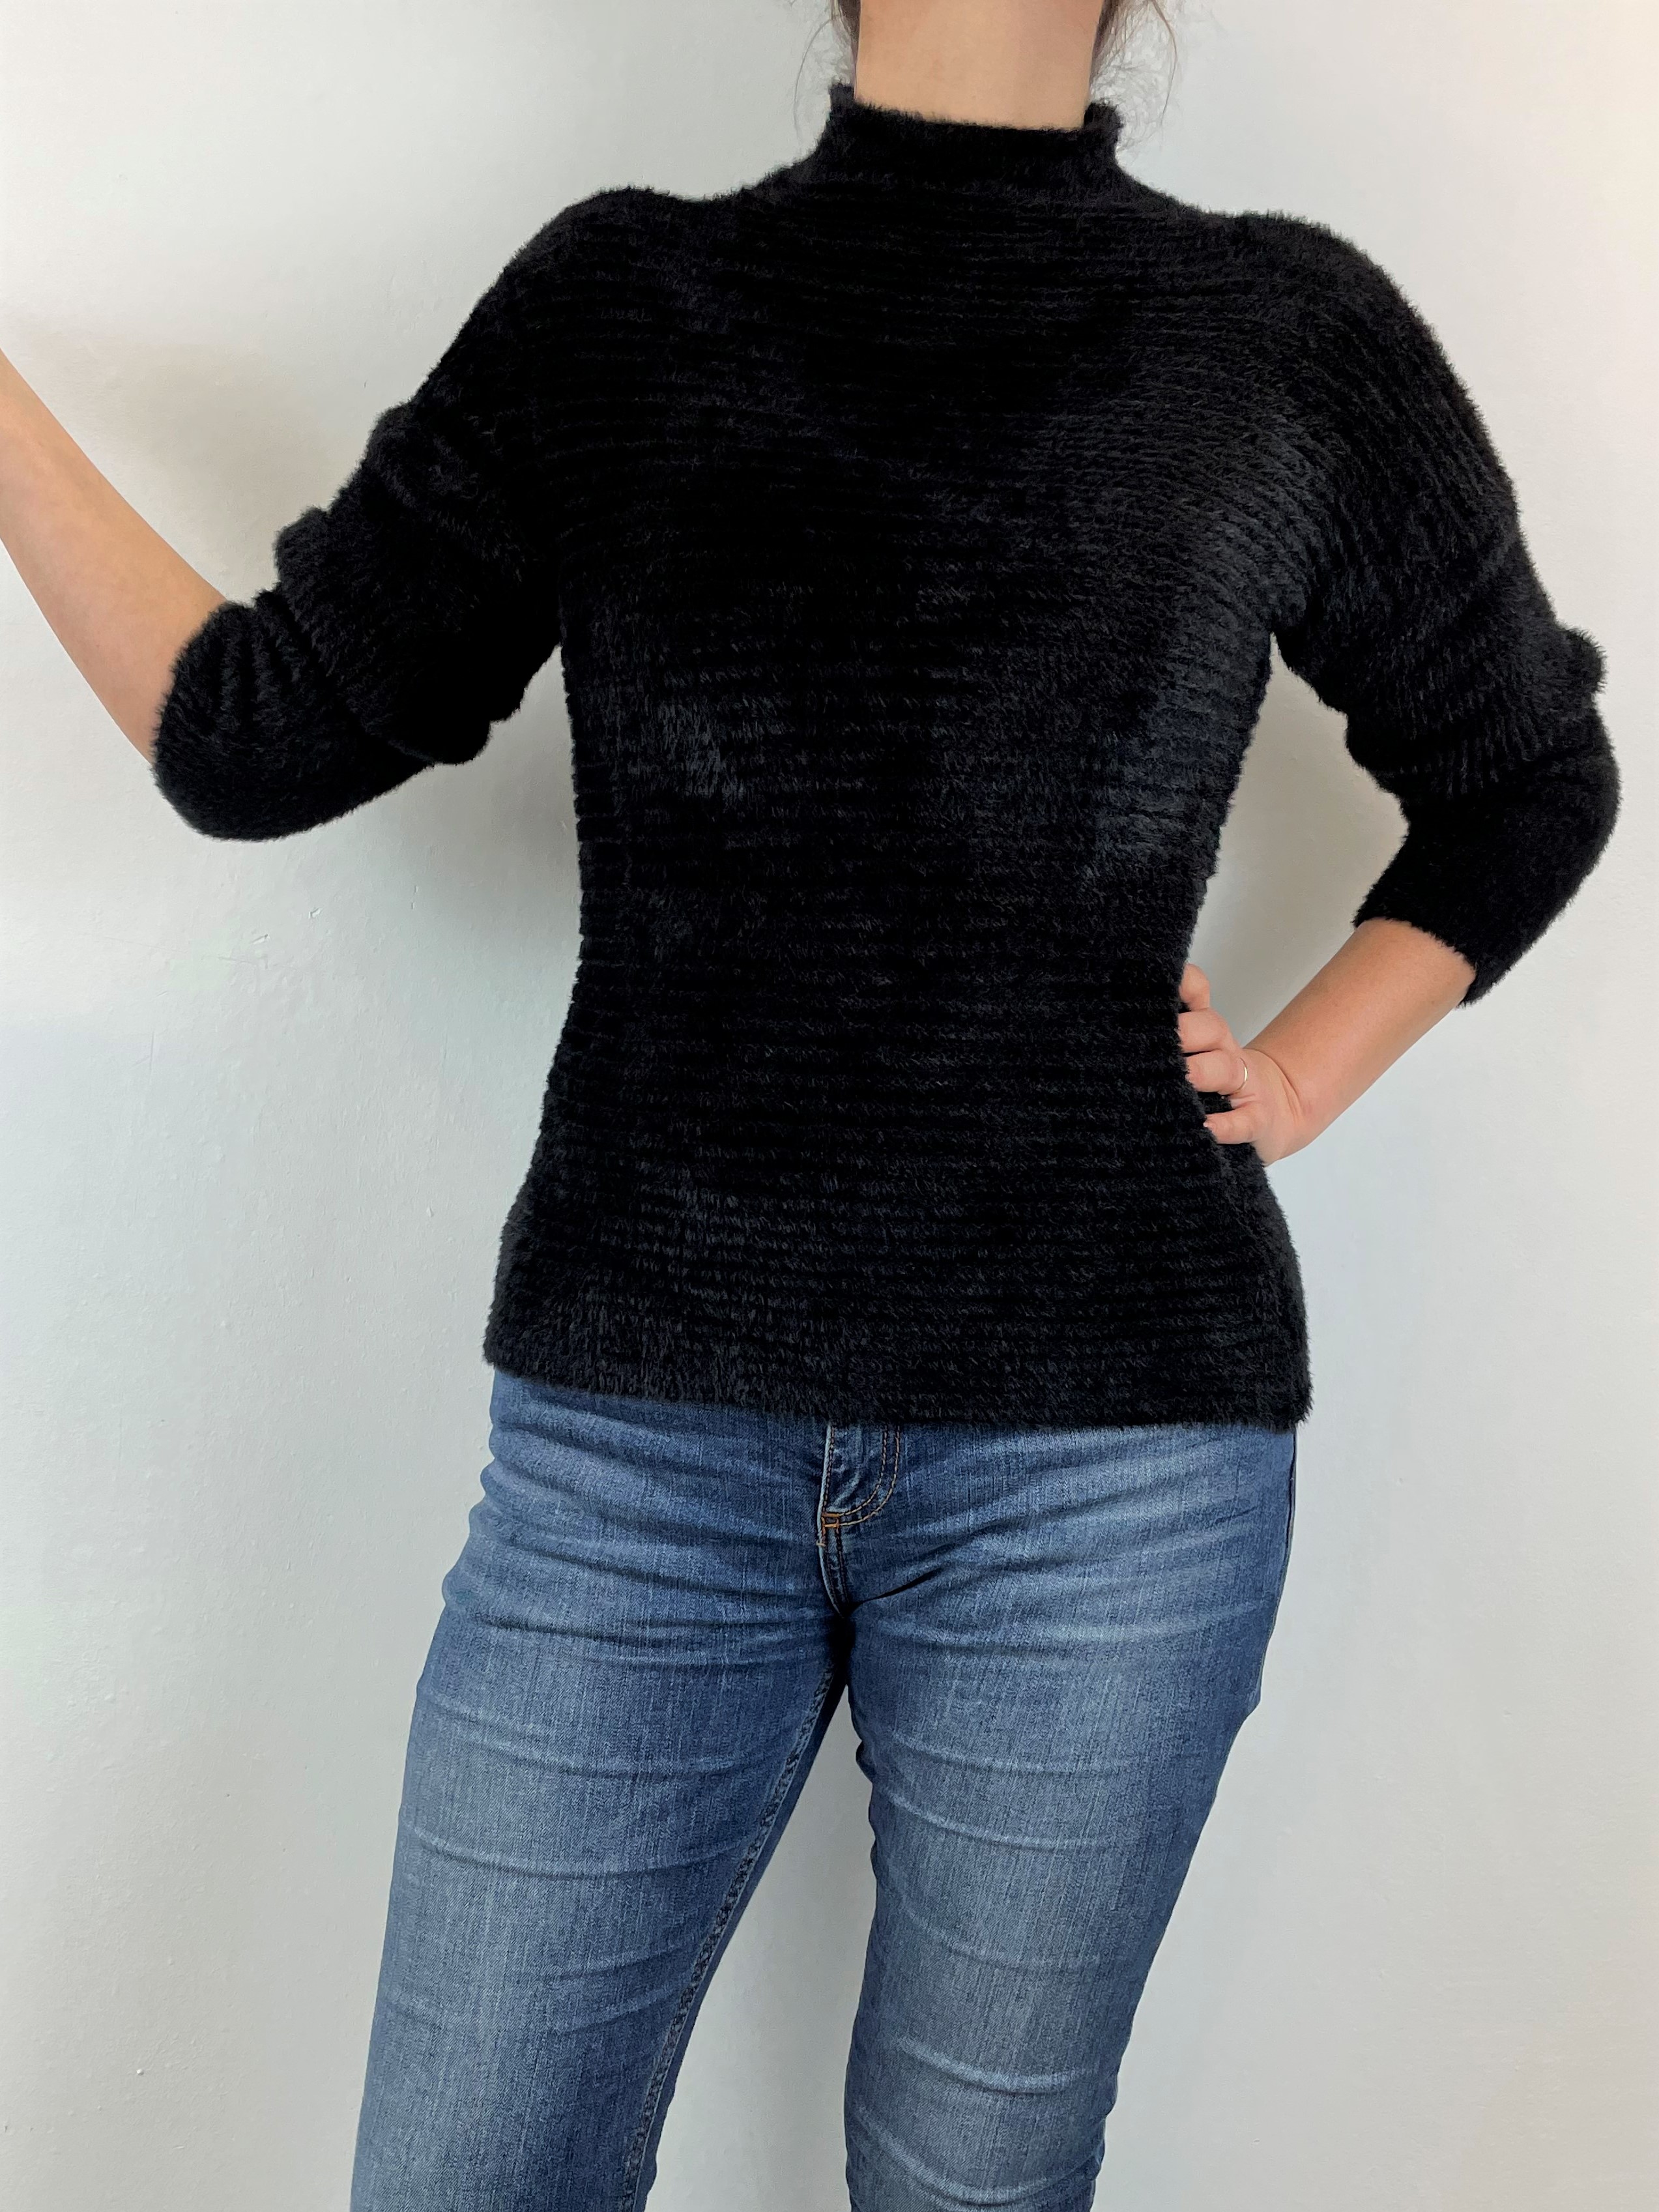 Flauschiger schwarzer Pullover